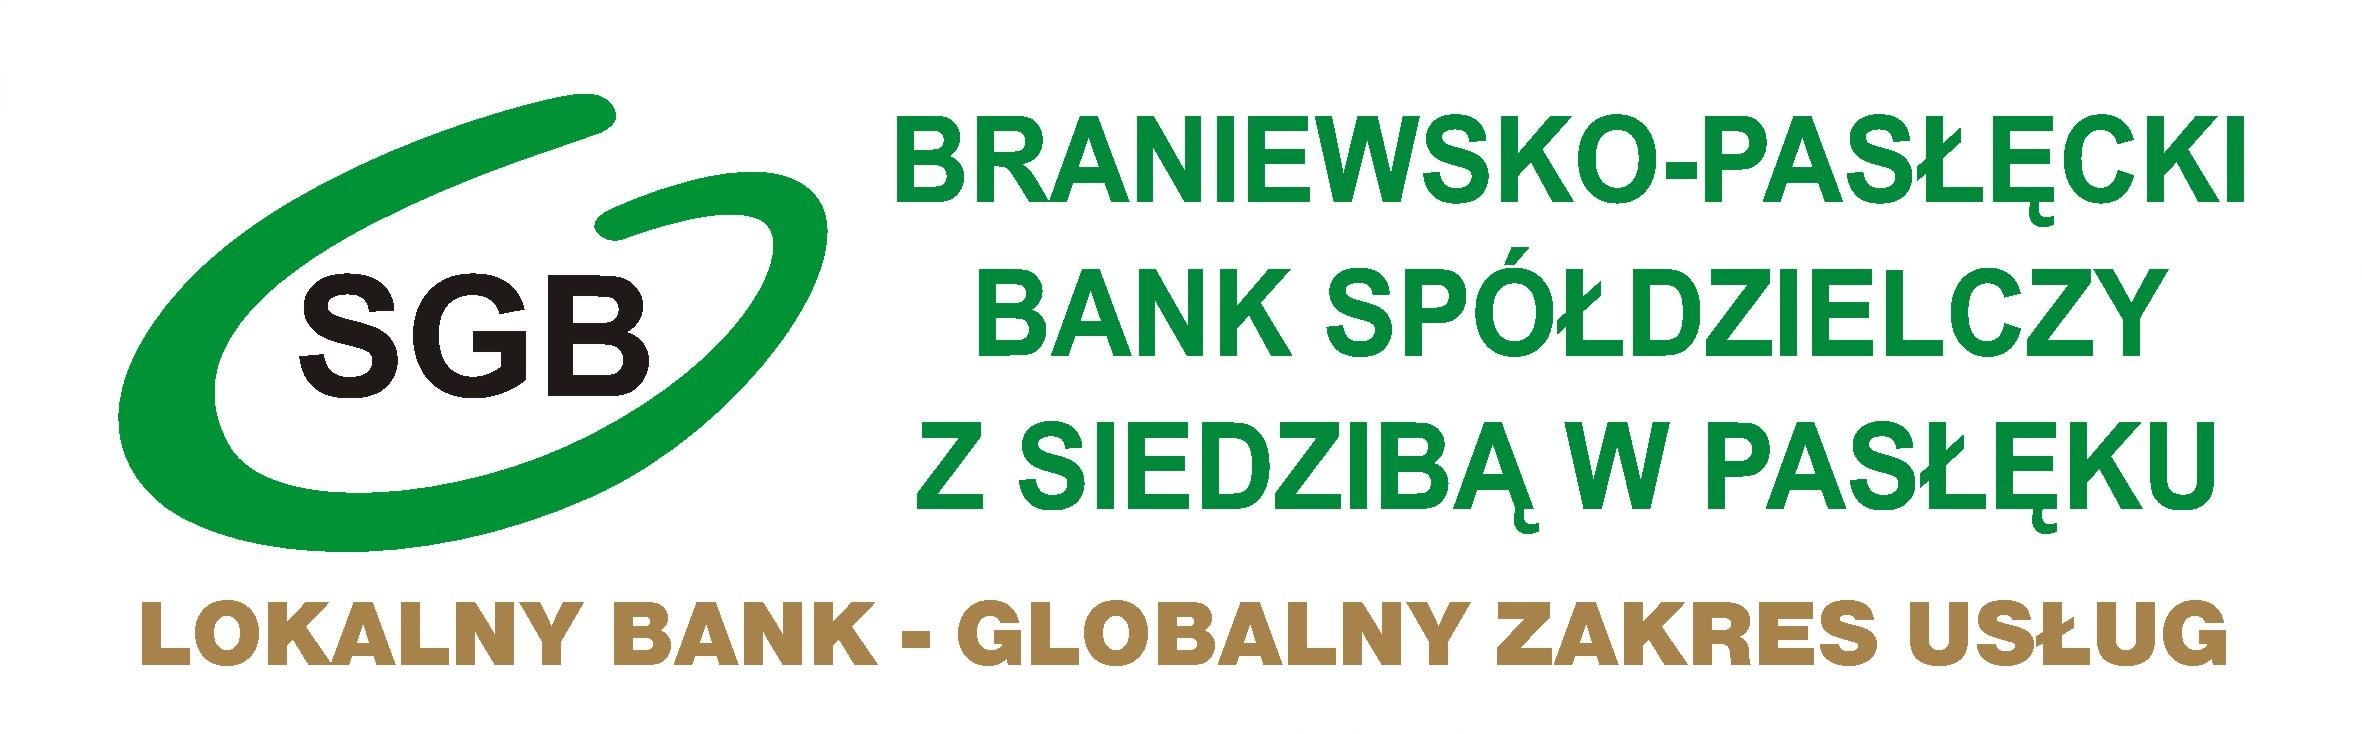 IPS-SGB - Braniewsko-Pasłęcki Bank Spółdzielczy z siedzibą w Pasłęku